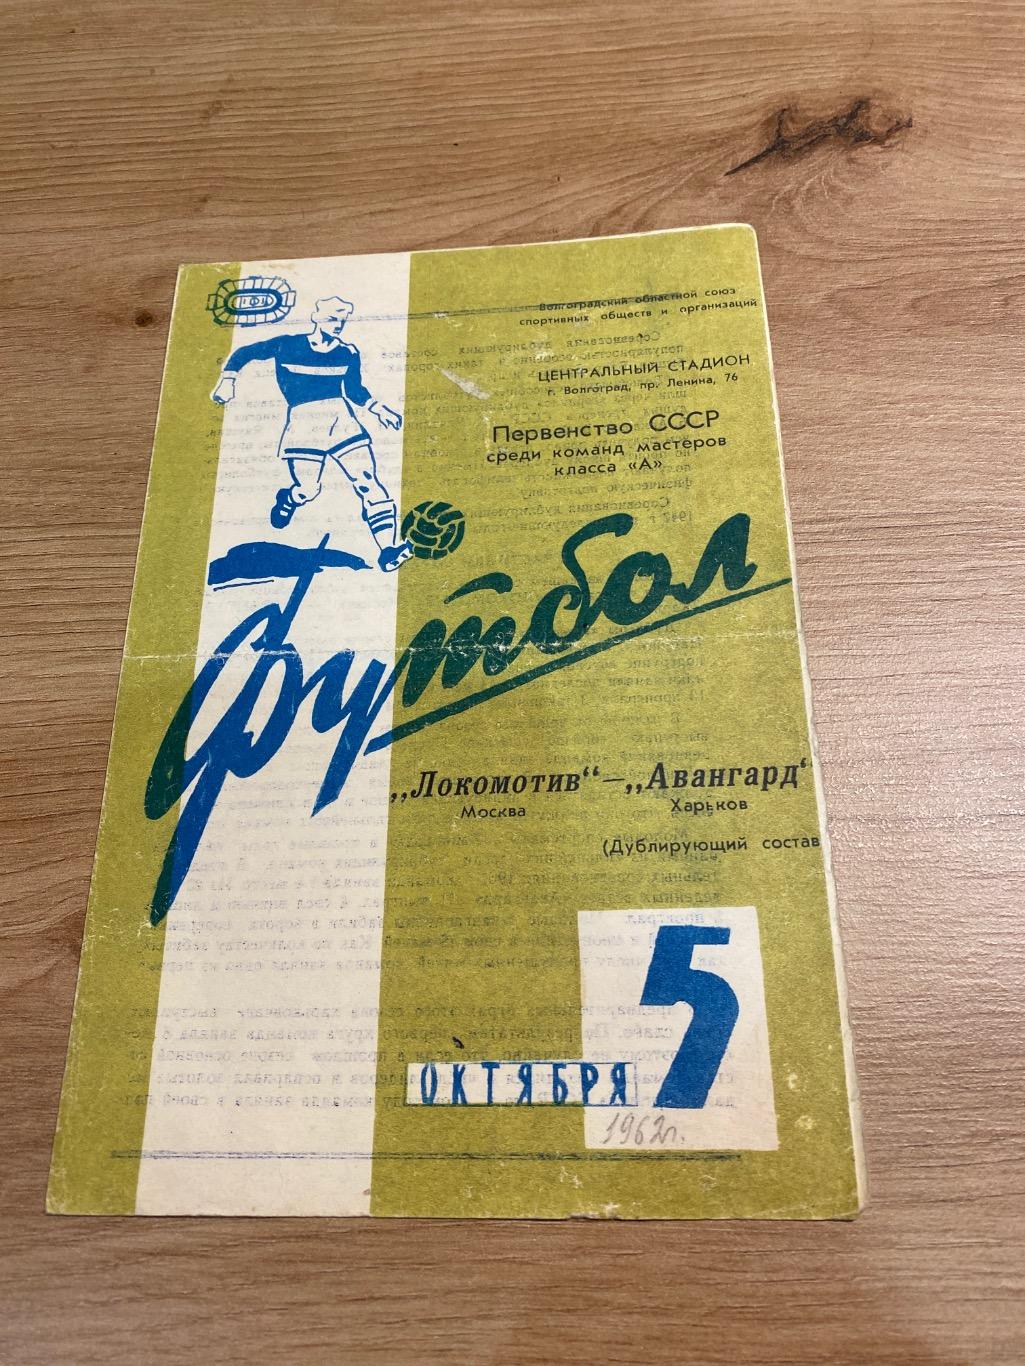 Авангард Харьков -Локомотив Москва 1962 (дублирующие составы)